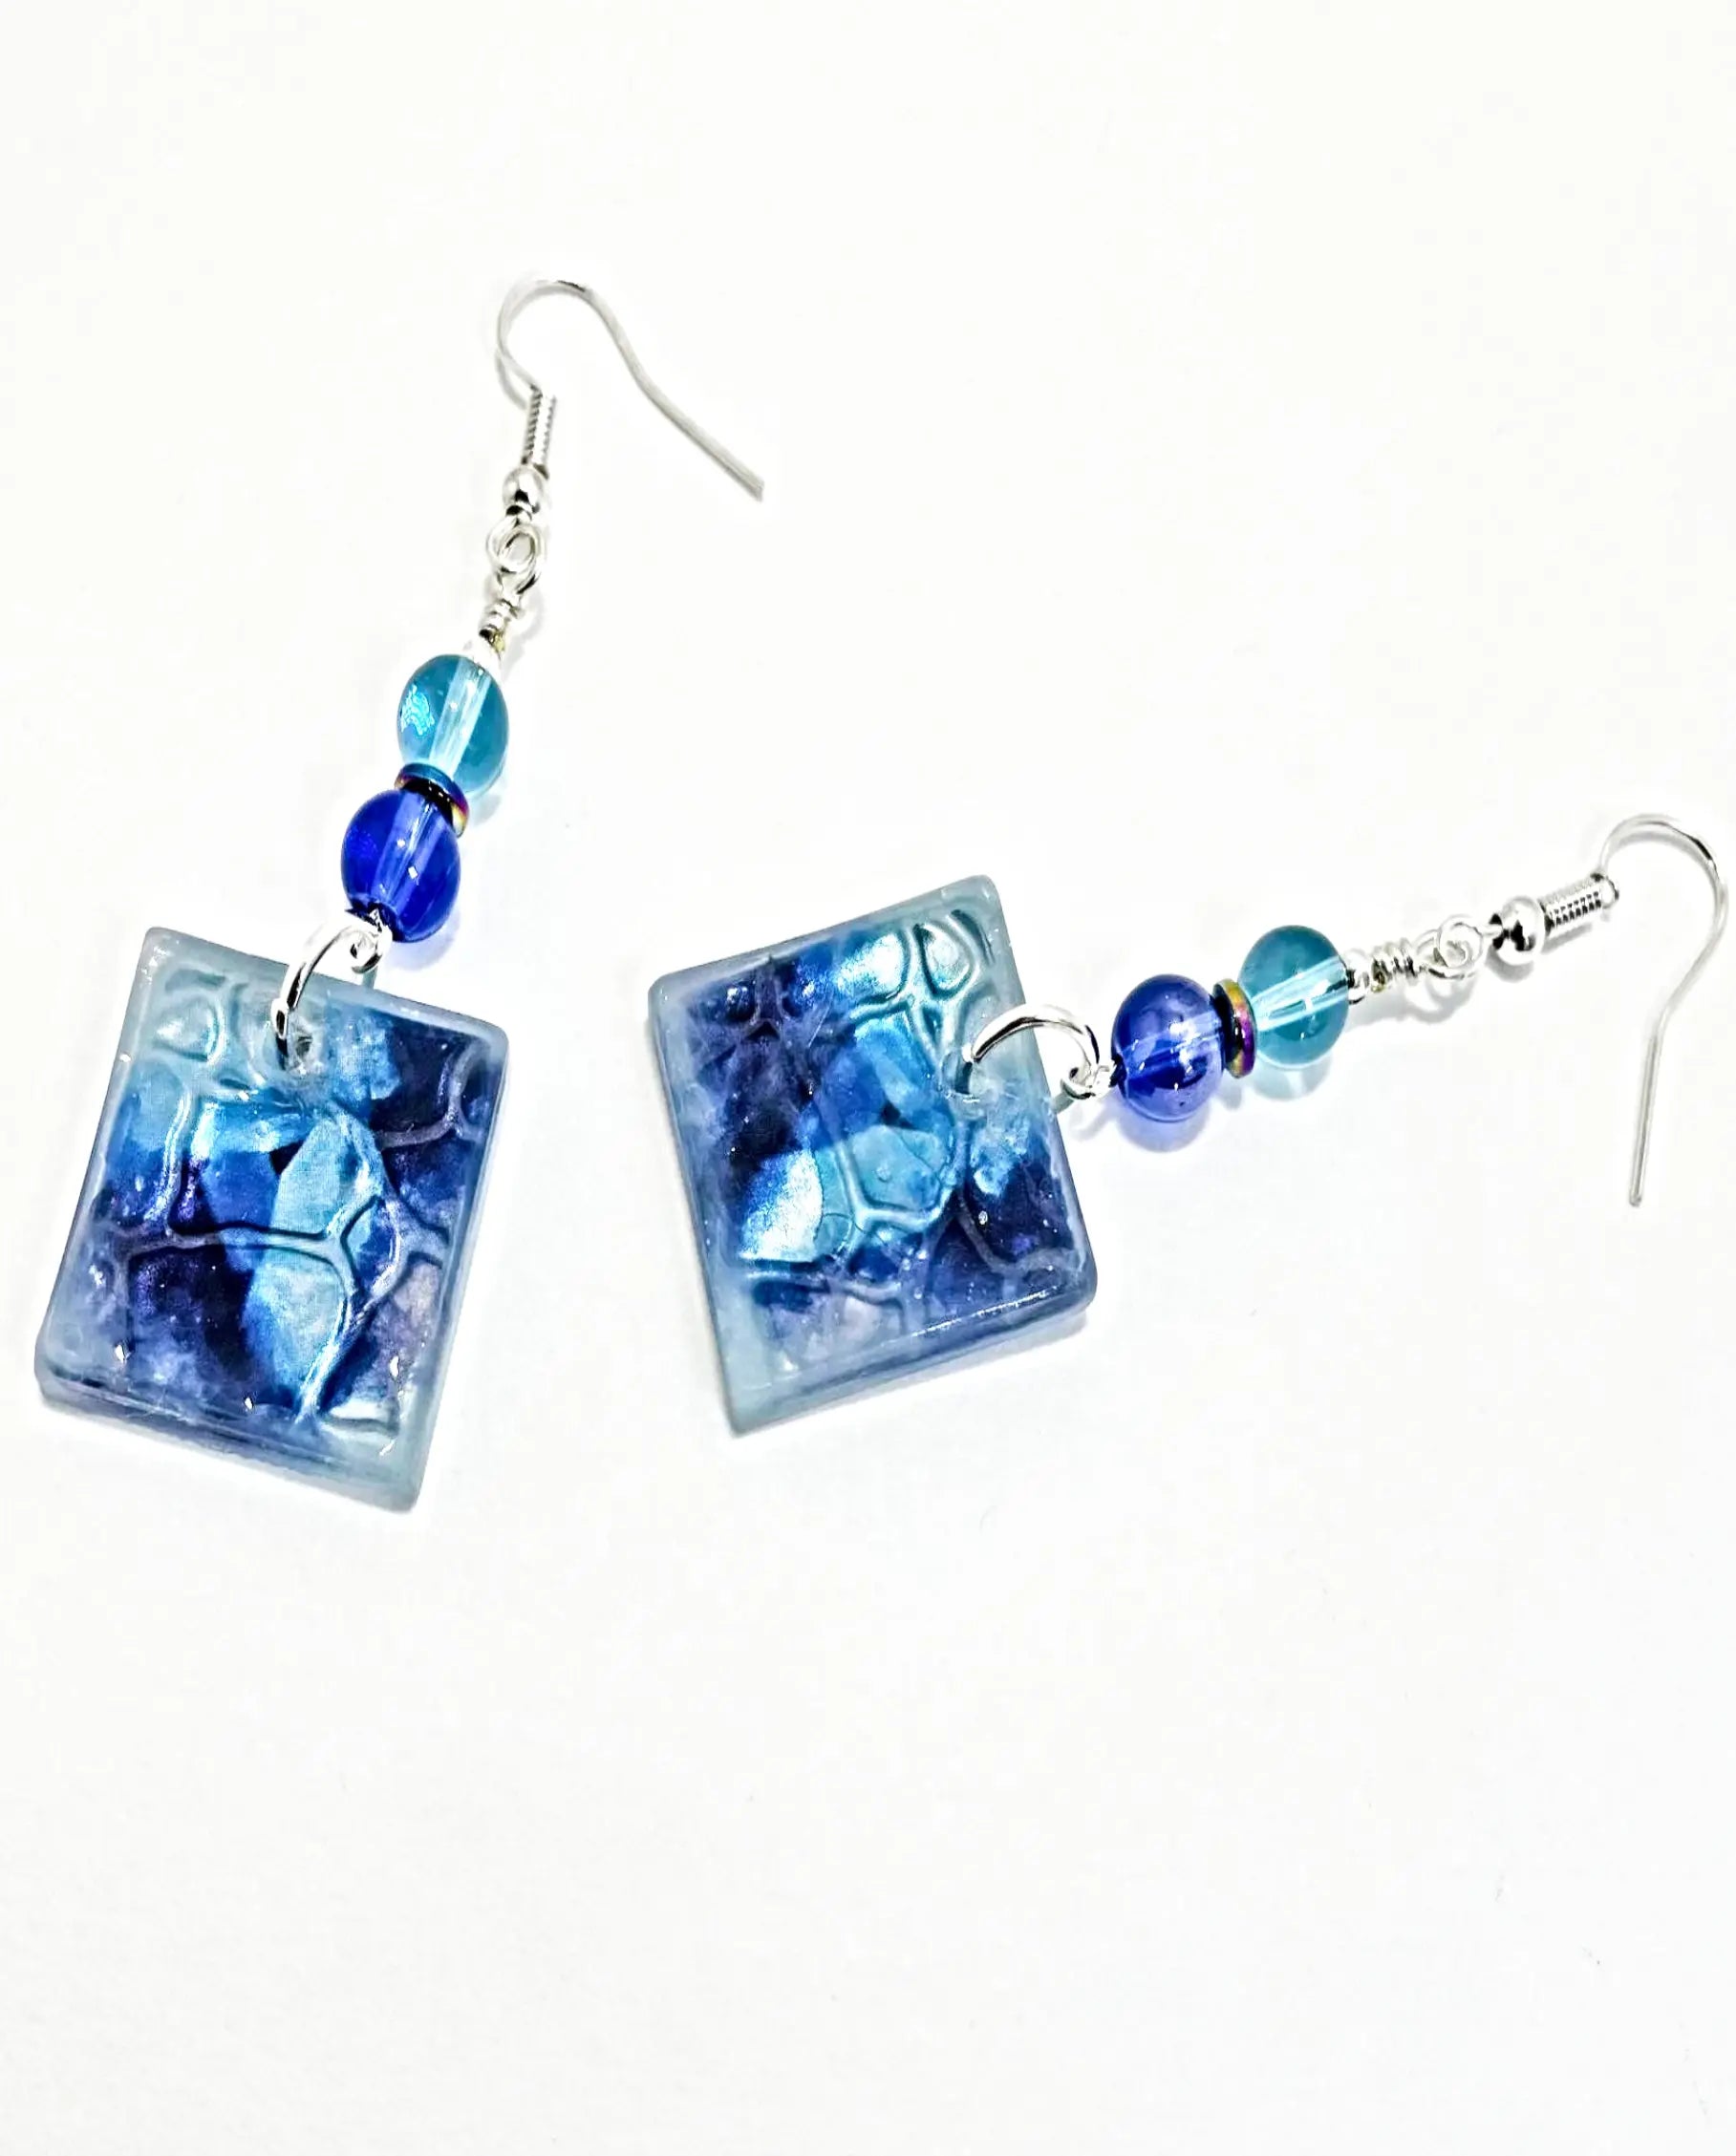 Blue swirl earrings - Image #4